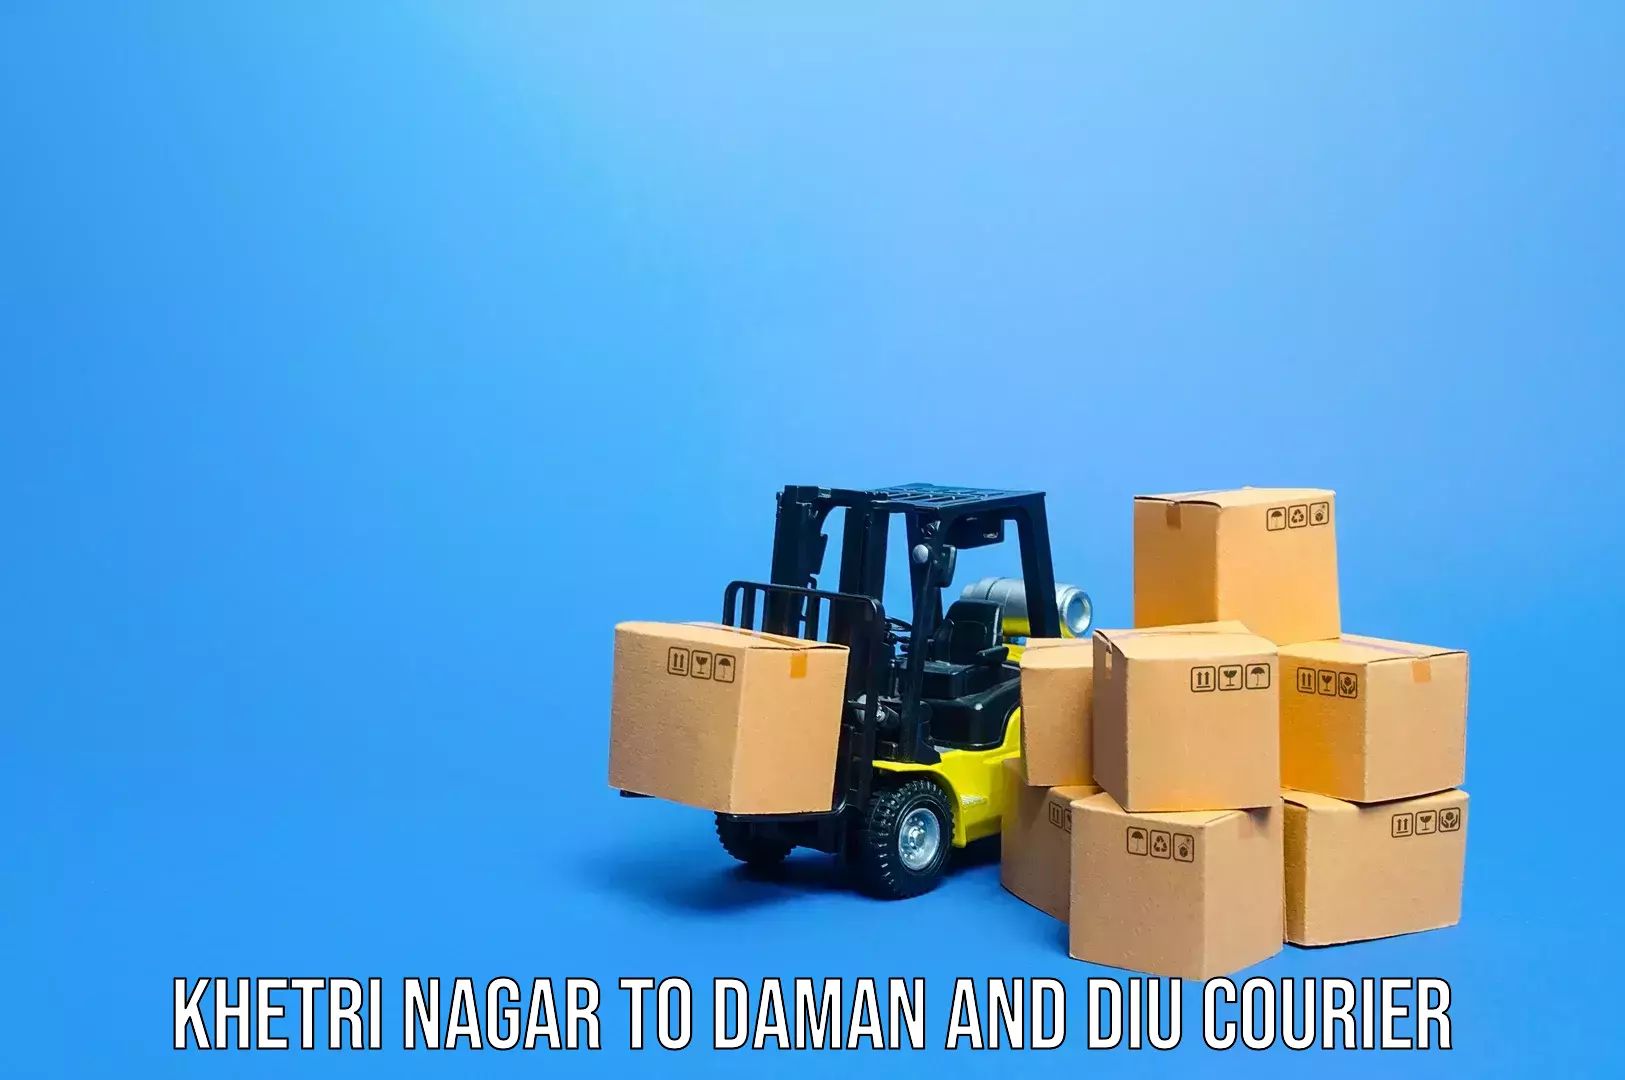 Corporate baggage transport Khetri Nagar to Diu